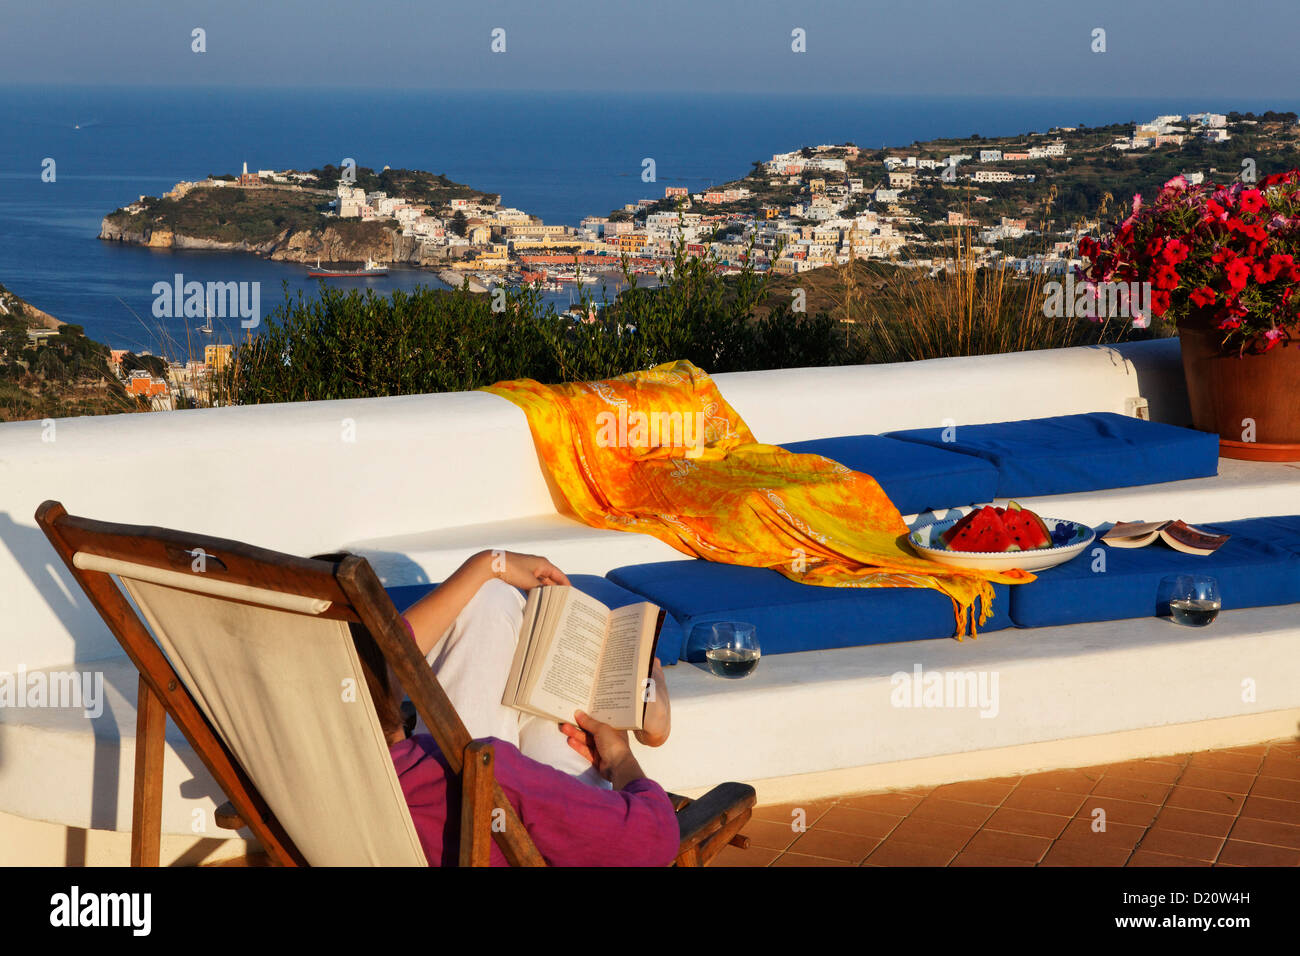 La terrazza dell'affitto vacanze Gabbiano, Isola di Ponza e isole Pontine, Lazio, l'Italia, Europa Foto Stock